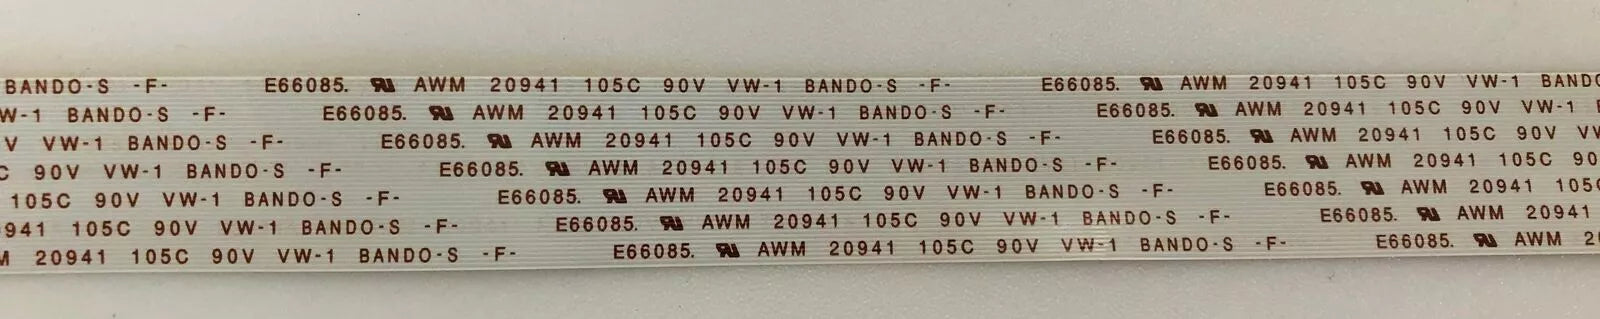 E66085 AWM 20941 105C 90V VW-1 BANDO-S F A001219-B CABLE - PIONEER PDP-435PE